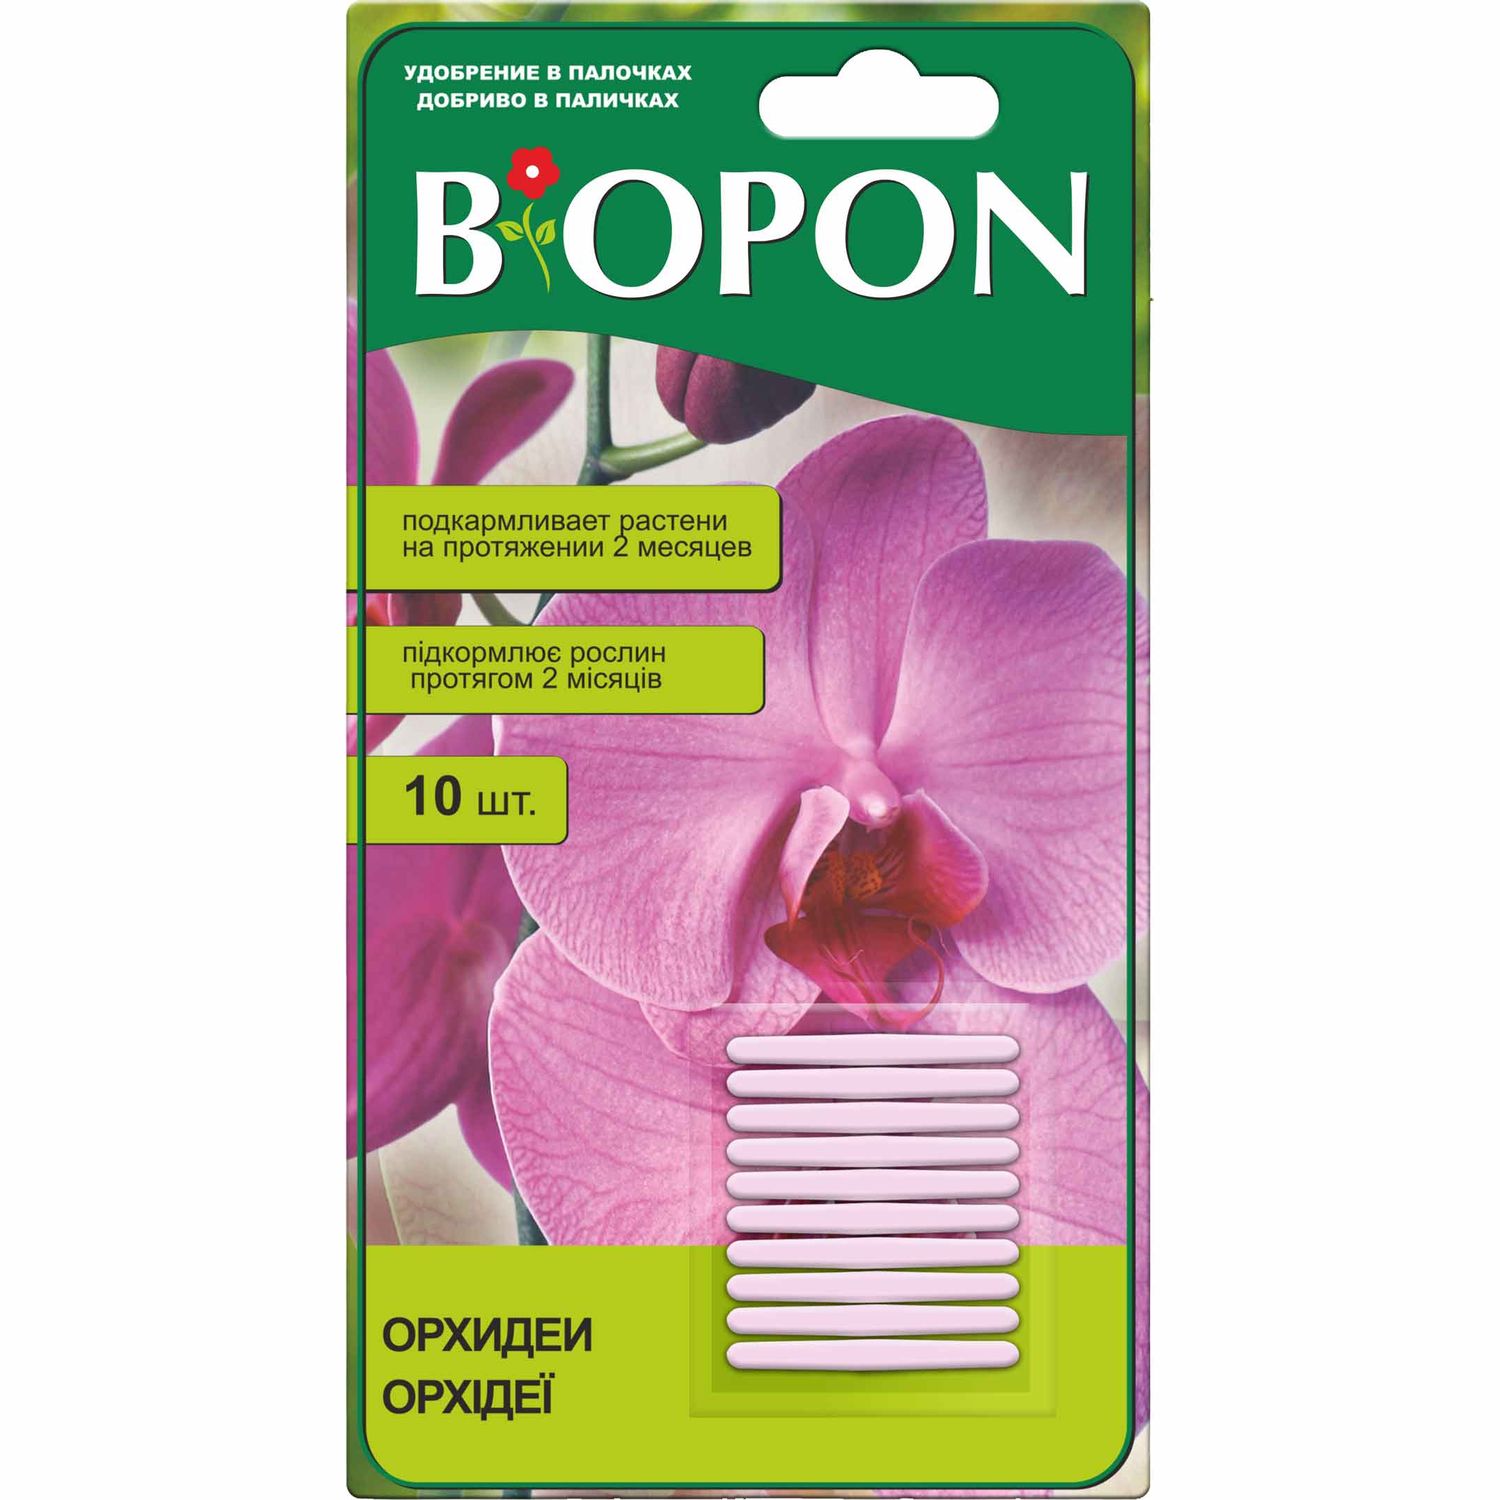 Удобрение в палочках Biopon для орхидей, 10 шт. - фото 1